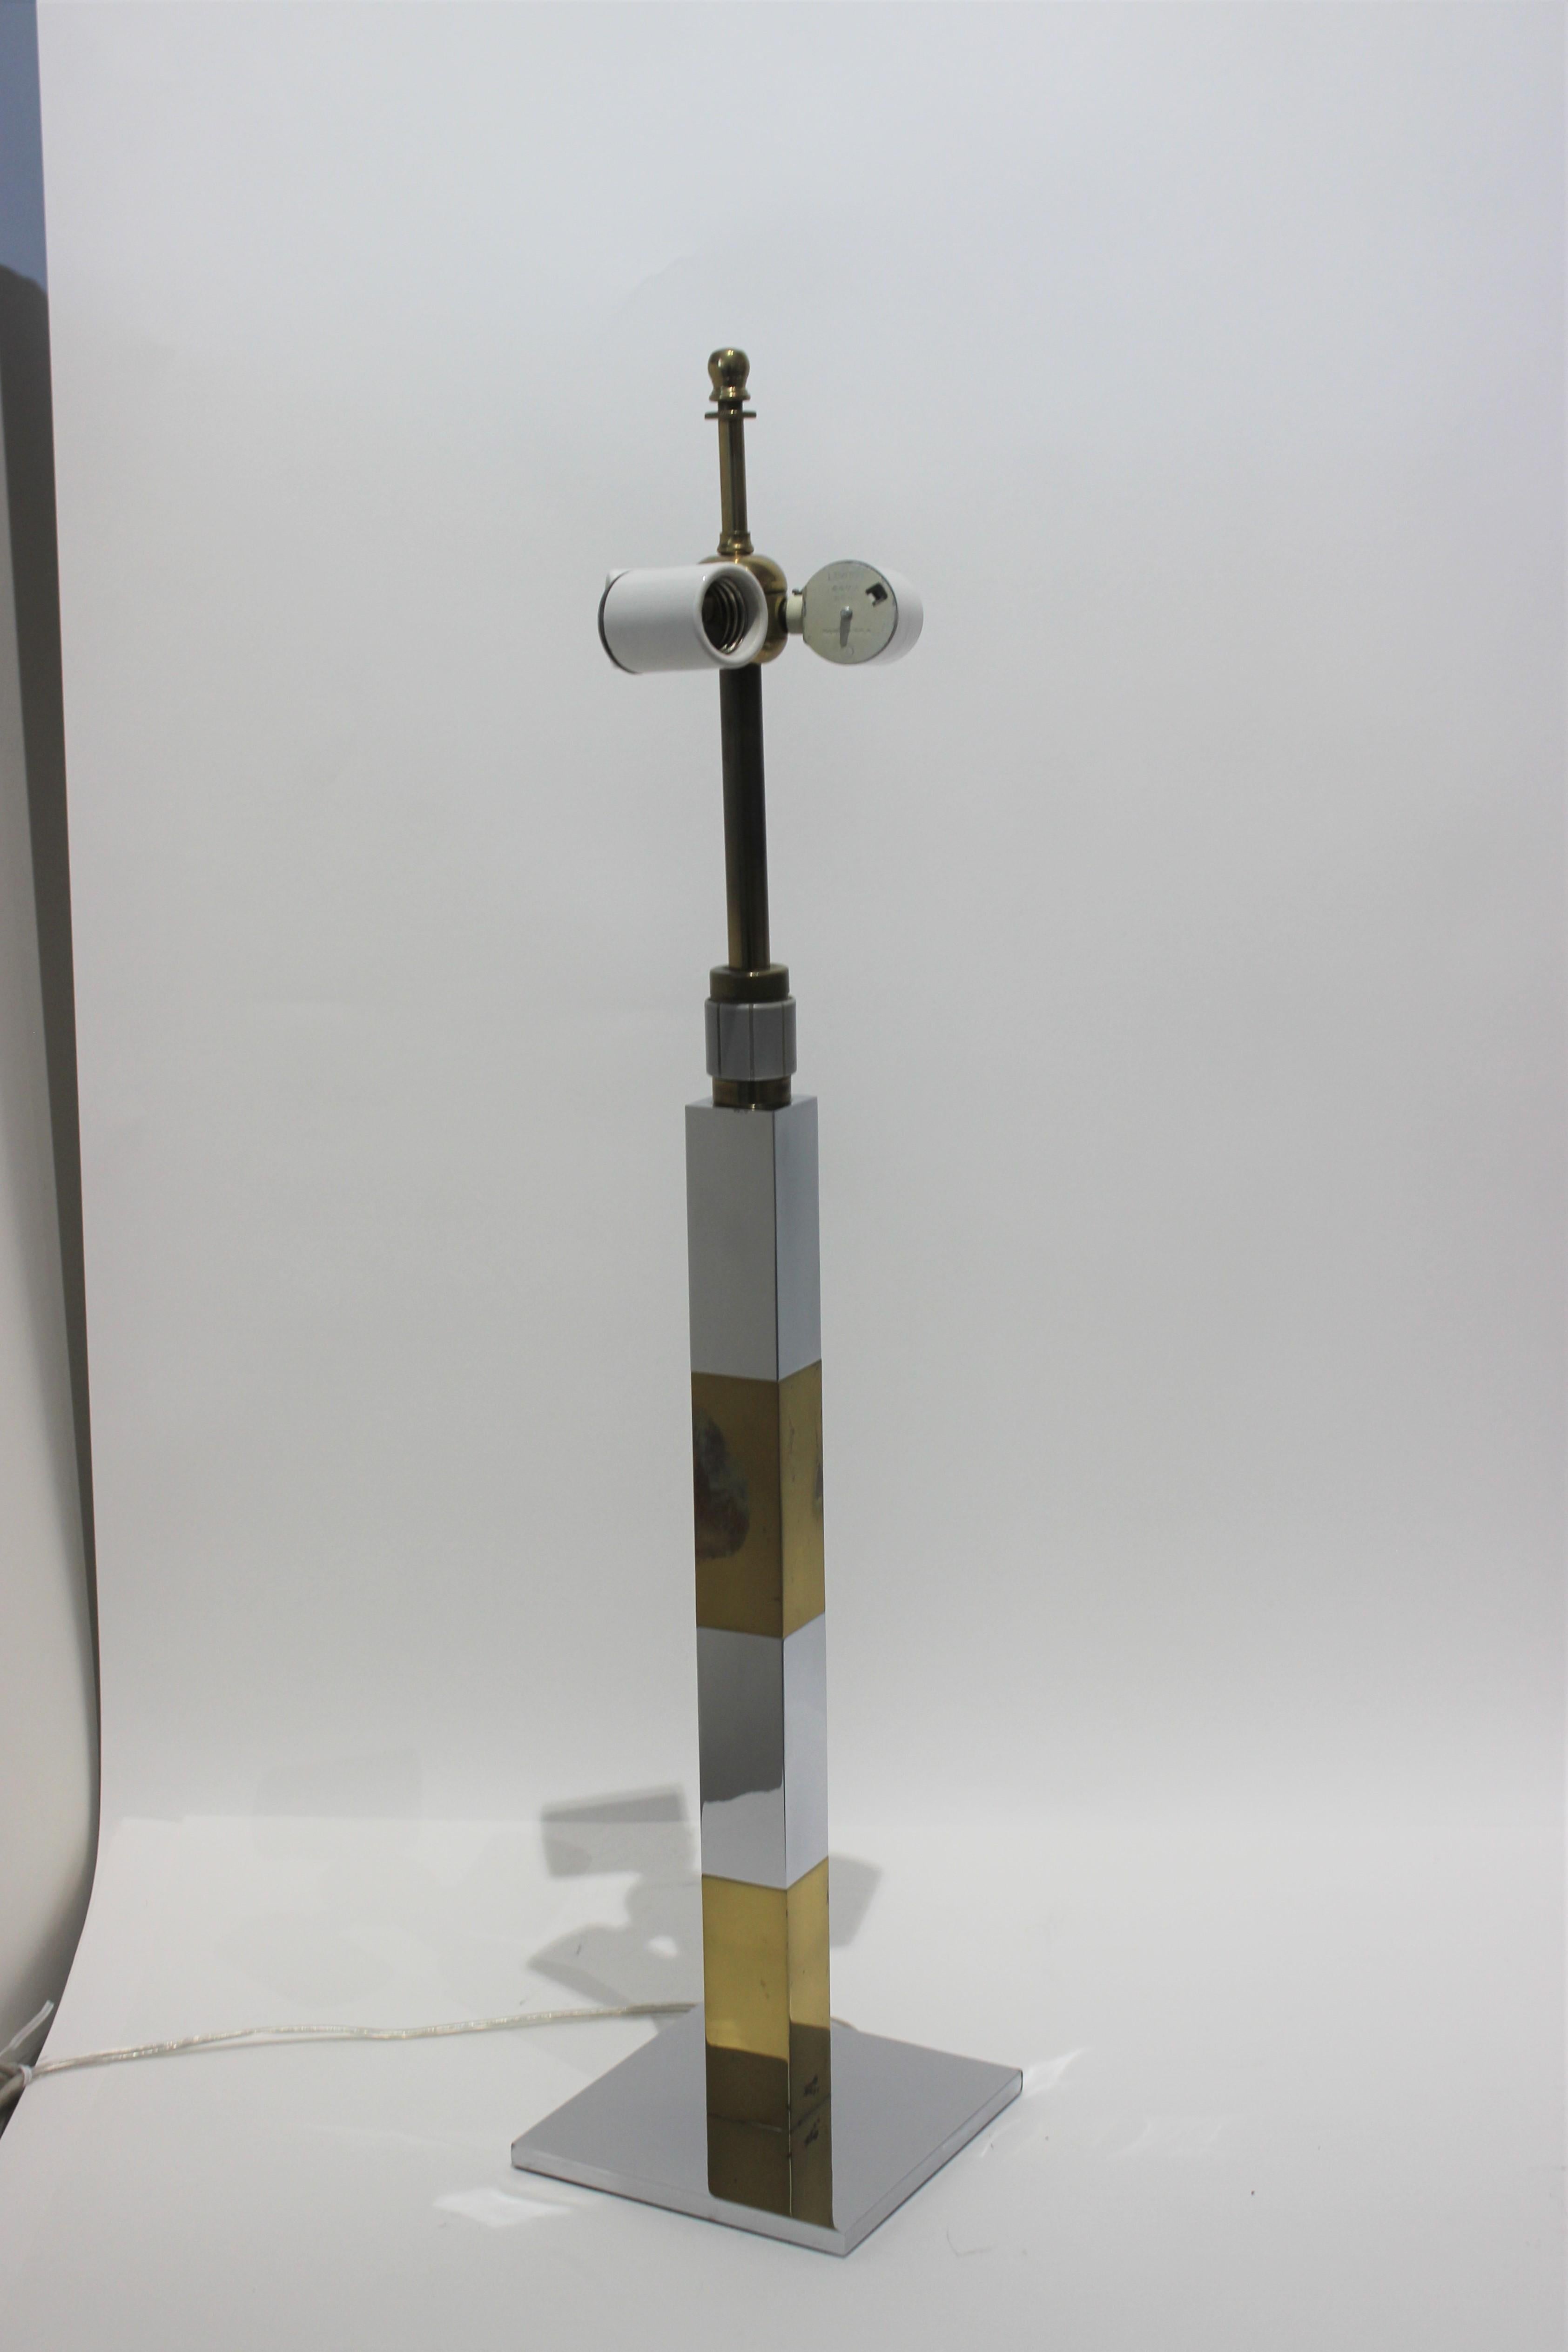 Lampe de table Skyscraper en métal mixte avec variateur d'intensité par Paul Evans. L'électricité a été refaite à neuf. Le variateur entoure la tige près du col et tourne dans le sens des aiguilles d'une montre ou dans le sens inverse pour régler